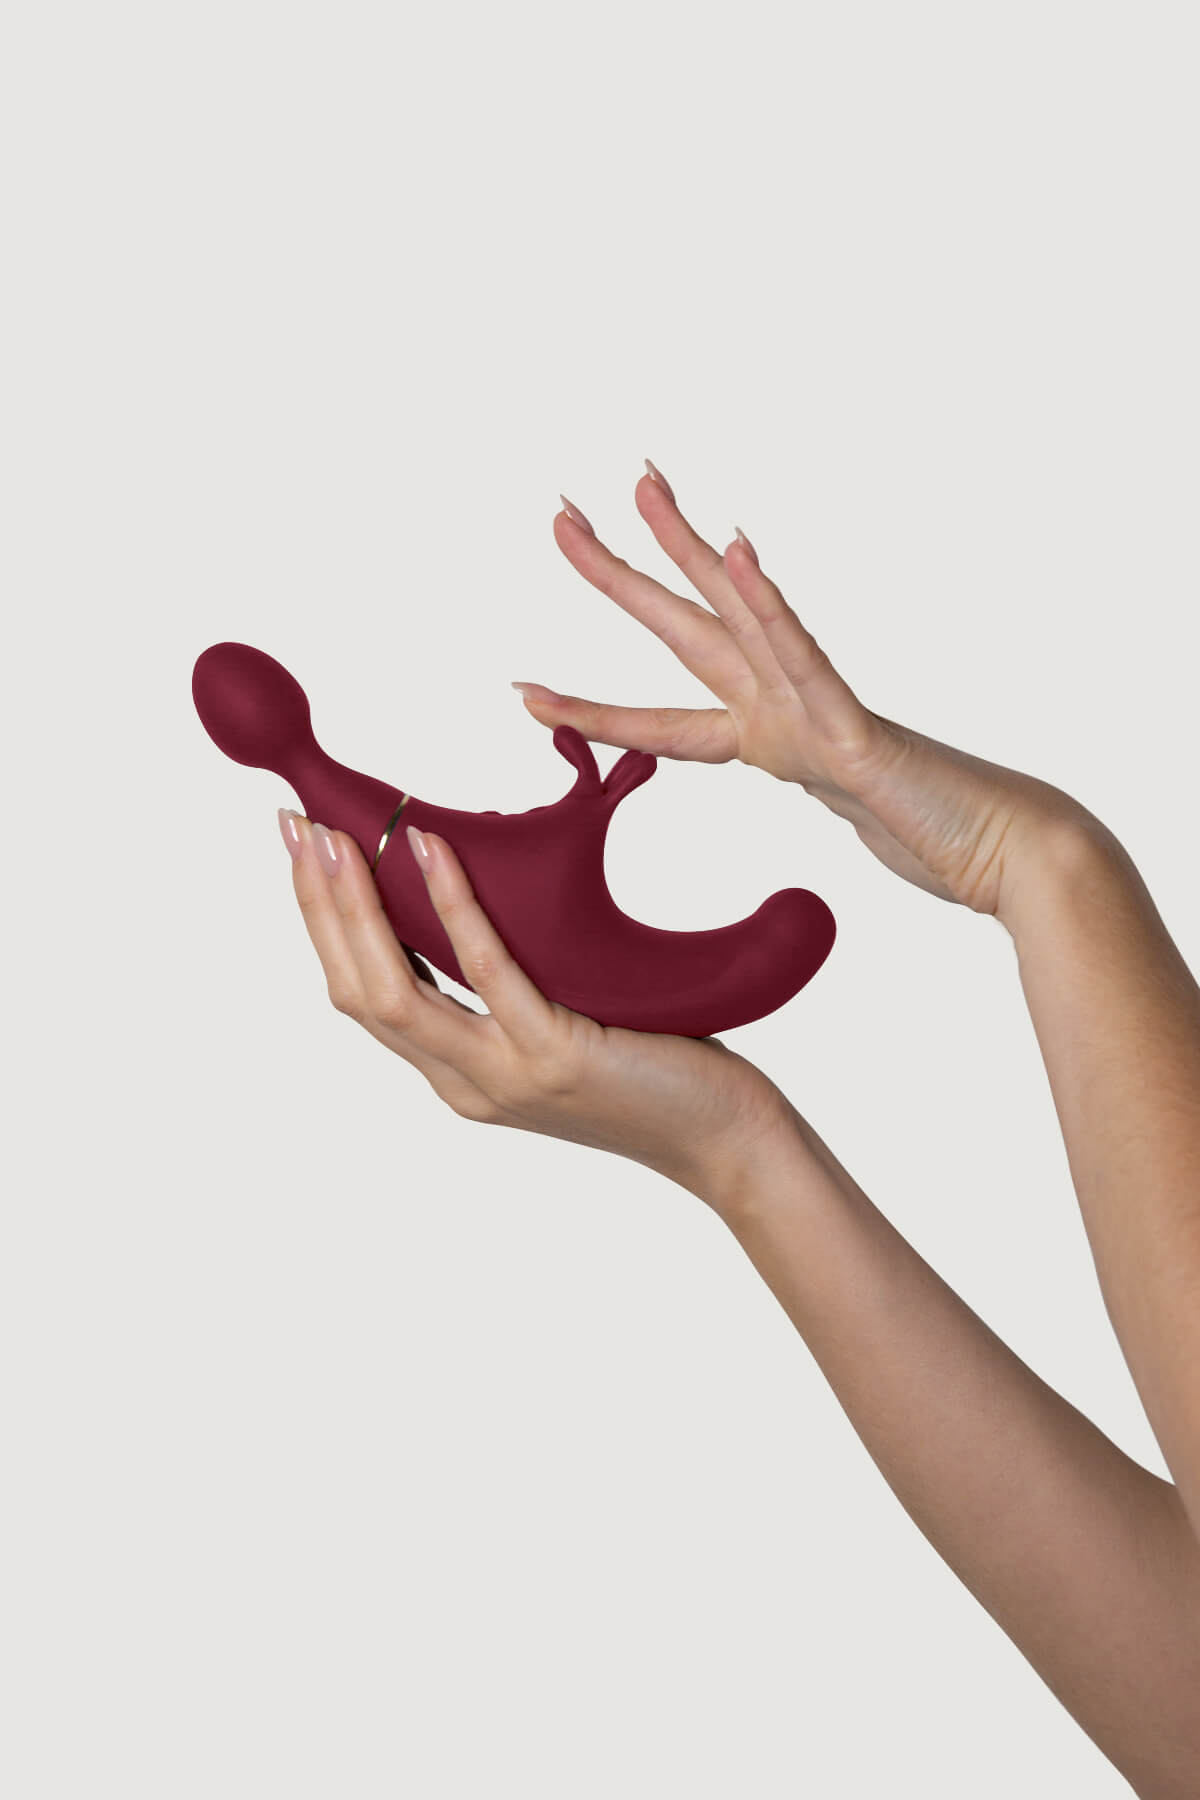 Klitorinis vibratorius ir G taško stimuliatorius "Fusion" - Rudas   
"Fusion" yra naujoji ,,Adrien Lastic" žvaigždė - trigubos stimuliacijos žaislas, kuris privers jus ištirpti iš malonumo. Viename sekso žaislo gale yra  masažuoklis , su kuriuo galite stimuliuoti savo jautriausias erogenines zonas. Jis turi  9 skirtingus vibracijos rėžimus . Juk preliudija yra būtina, tiesa? 
"Fusion'' taip pat  stimuliuoja ir klitor į. Kitame žaislo gale yra du iškilimai, specialiai sukurti klitoriui stimuliuoti. Jo pagalba pasieksite virpinantį orgazmą! Be to, šio sekso žaislo dizainas sukurtas taip, kad galėtumėte stimuliuoti ir  G tašką . ,,Fusion'' turi  7 pulsavimo intensyvumus , kurie nuneš jus svaiginančius malonumus. Jo atliekami judesiai imituoja jūsų pačių pirštų judesius. Mėgaukitės neįtikėtinais pojūčiais su ,,Fusion" triguba stimuliacija! 
Kadangi ,,Fusion'' sekso žaislas turi daugybę panaudojimo galimybių - pasirinkę vieną iš jų, galėsite žaisti su savimi taip, kaip tik to panorėsite. Rekomenduojame masturbaciją pradėti ir pabaigti nuo masažuojančios stimuliatoriaus pusės, tam, kad tinkamai save paruoštumėte būsimai aistrai. Kai temperatūra ims kaisti - pradėkite stimuliuoti makštį ir klitorį. ,,Fusion" prisitaiko prie jūsų, o klitorio stimuliatorius puikiai dera su G taško stimuliatoriumi. Žaiskite su skirtingais vibracijos ir pulsacijos rėžimais, ir pasiruoškite daugkartiniams orgazmams.  
Tinkamai prižiūrint šis stimuliatorius tarnaus jums ilgai. Prieš ir po kiekvieno naudojimo nuplaukite jį šiltu vandeniu ir švelniu muilu arba  specialiu žaislų valikliu . Leiskite išdžiūti natūraliai. Šį sekso žaislą laikykite stalčiuje, specialiame maišelyje arba kitoje vietoje, kurioje nėra dulkių. Laikykite jį atokiau nuo kitų sekso žaislų. Nepalikite tiesioginiuose saulės spinduliuose ir niekada nelaikykite jo dideliame karštyje. 
Rekomenduojama naudoti kartu su  vandens pagrindo lubrikantu . Nenaudokite silikoninių lubrikantų, aliejų ar kremų, nes jie gali sugadinti prietaiso medžiagą ir apriboti jo veikimą bei galiojimo laiką. 